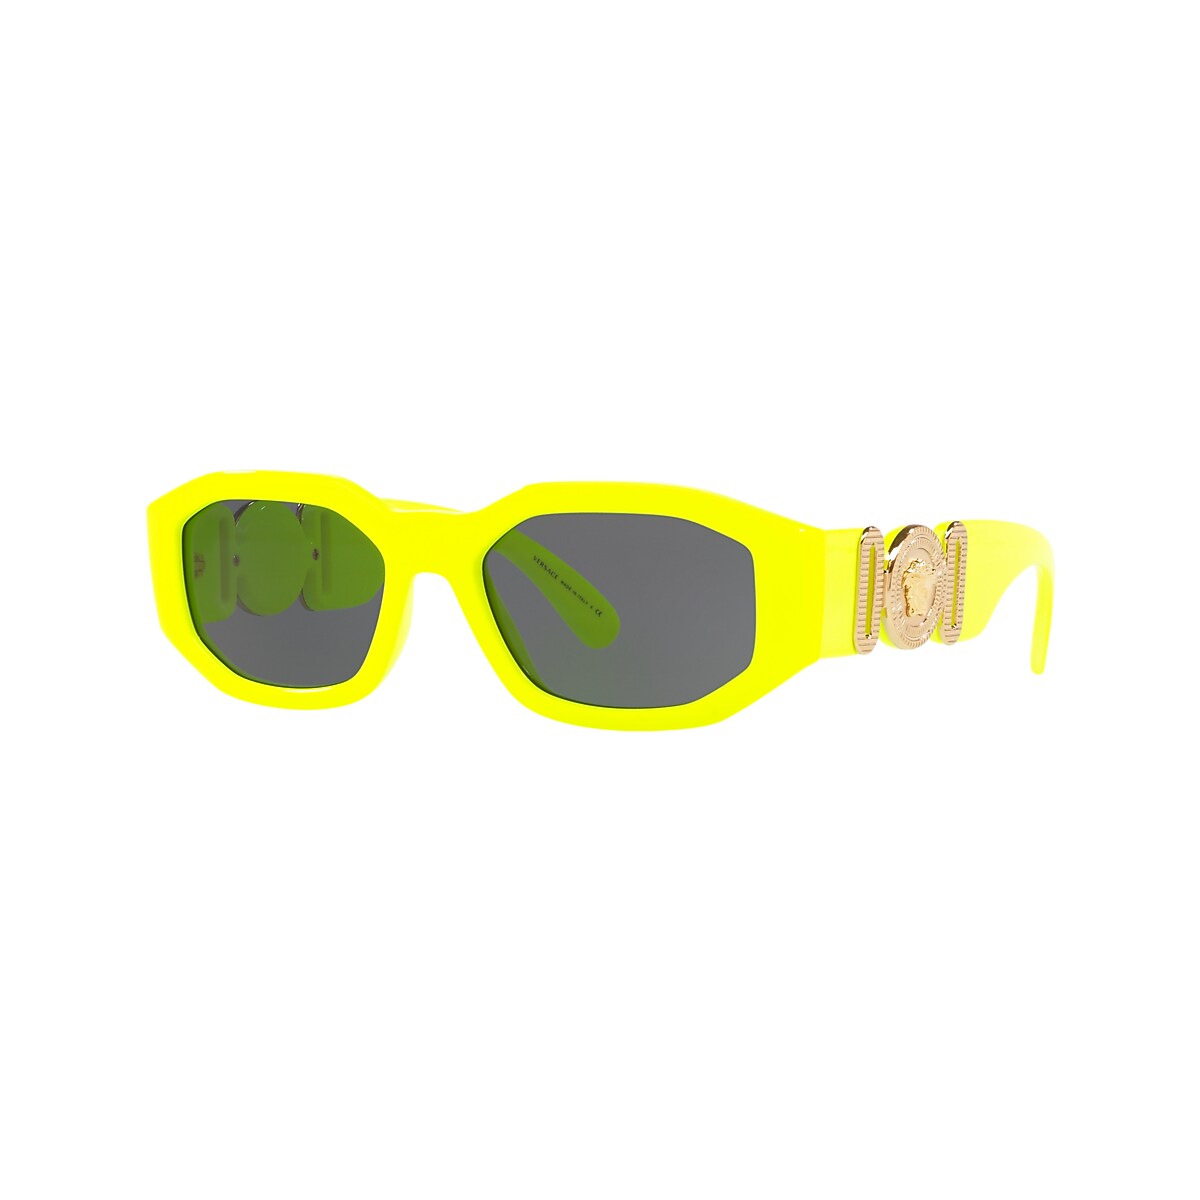 VERSACE VE4361 Biggie Yellow Fluo - Men Luxury Sunglasses, Dark Grey Lens